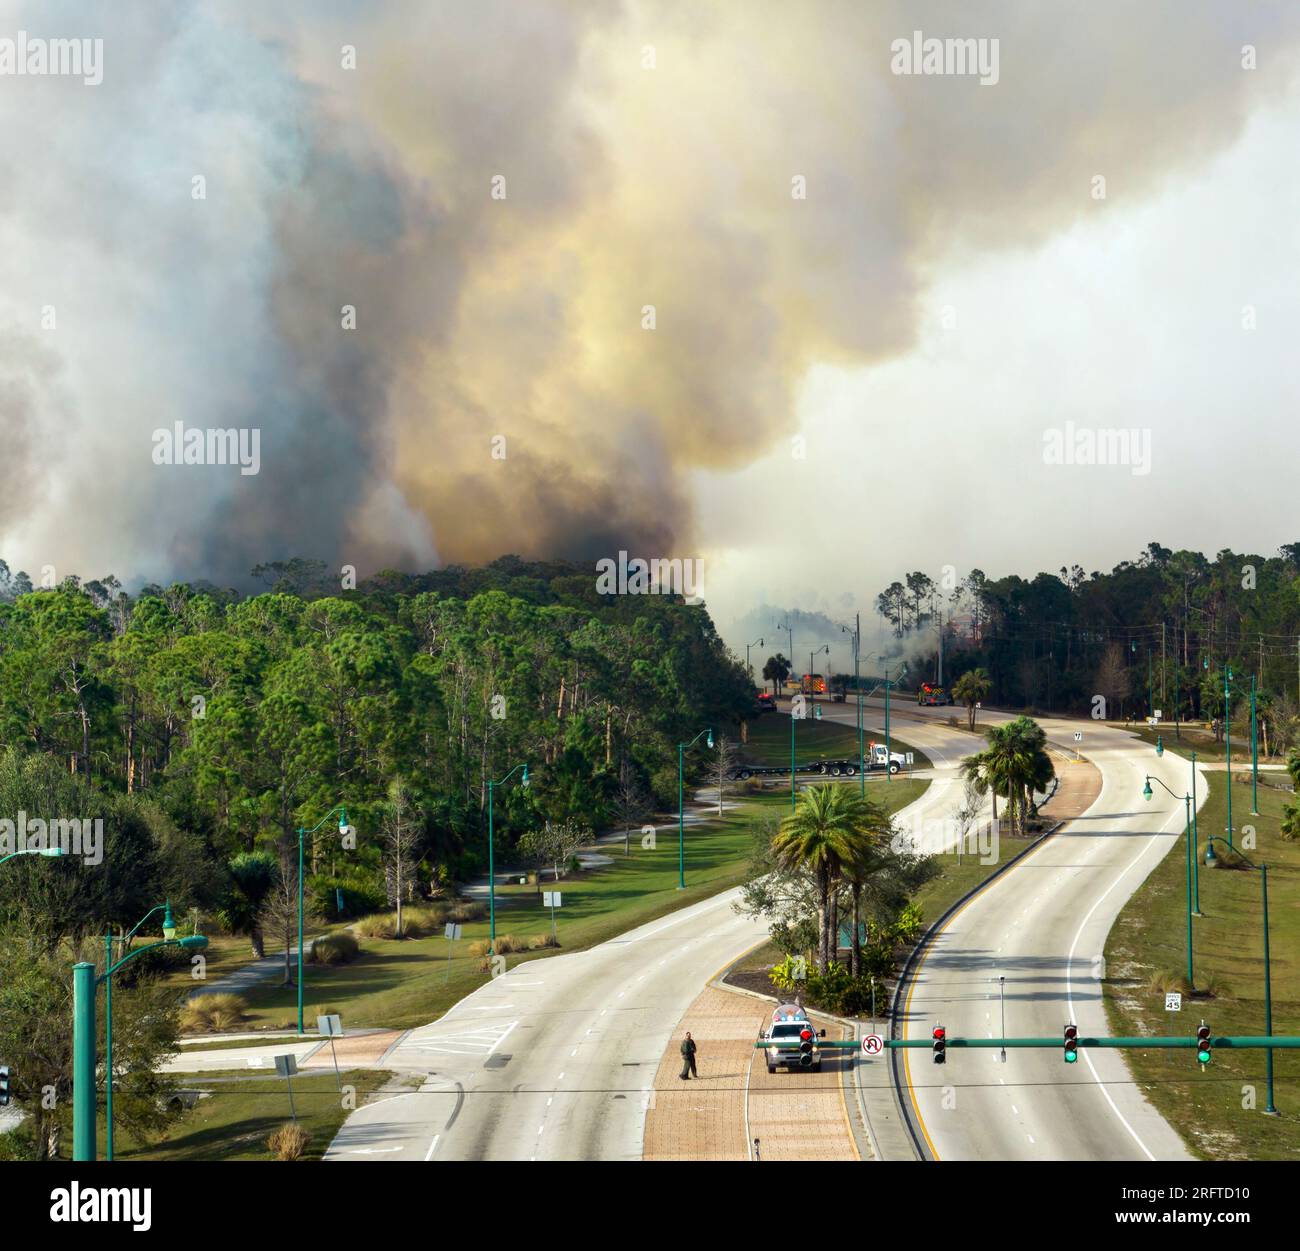 Vue aérienne des pompiers extincteurs extinction d'incendie de forêt brûlante sévèrement dans les bois de la jungle de Floride. Pompiers des services d'urgence qui essaient de mettre Banque D'Images